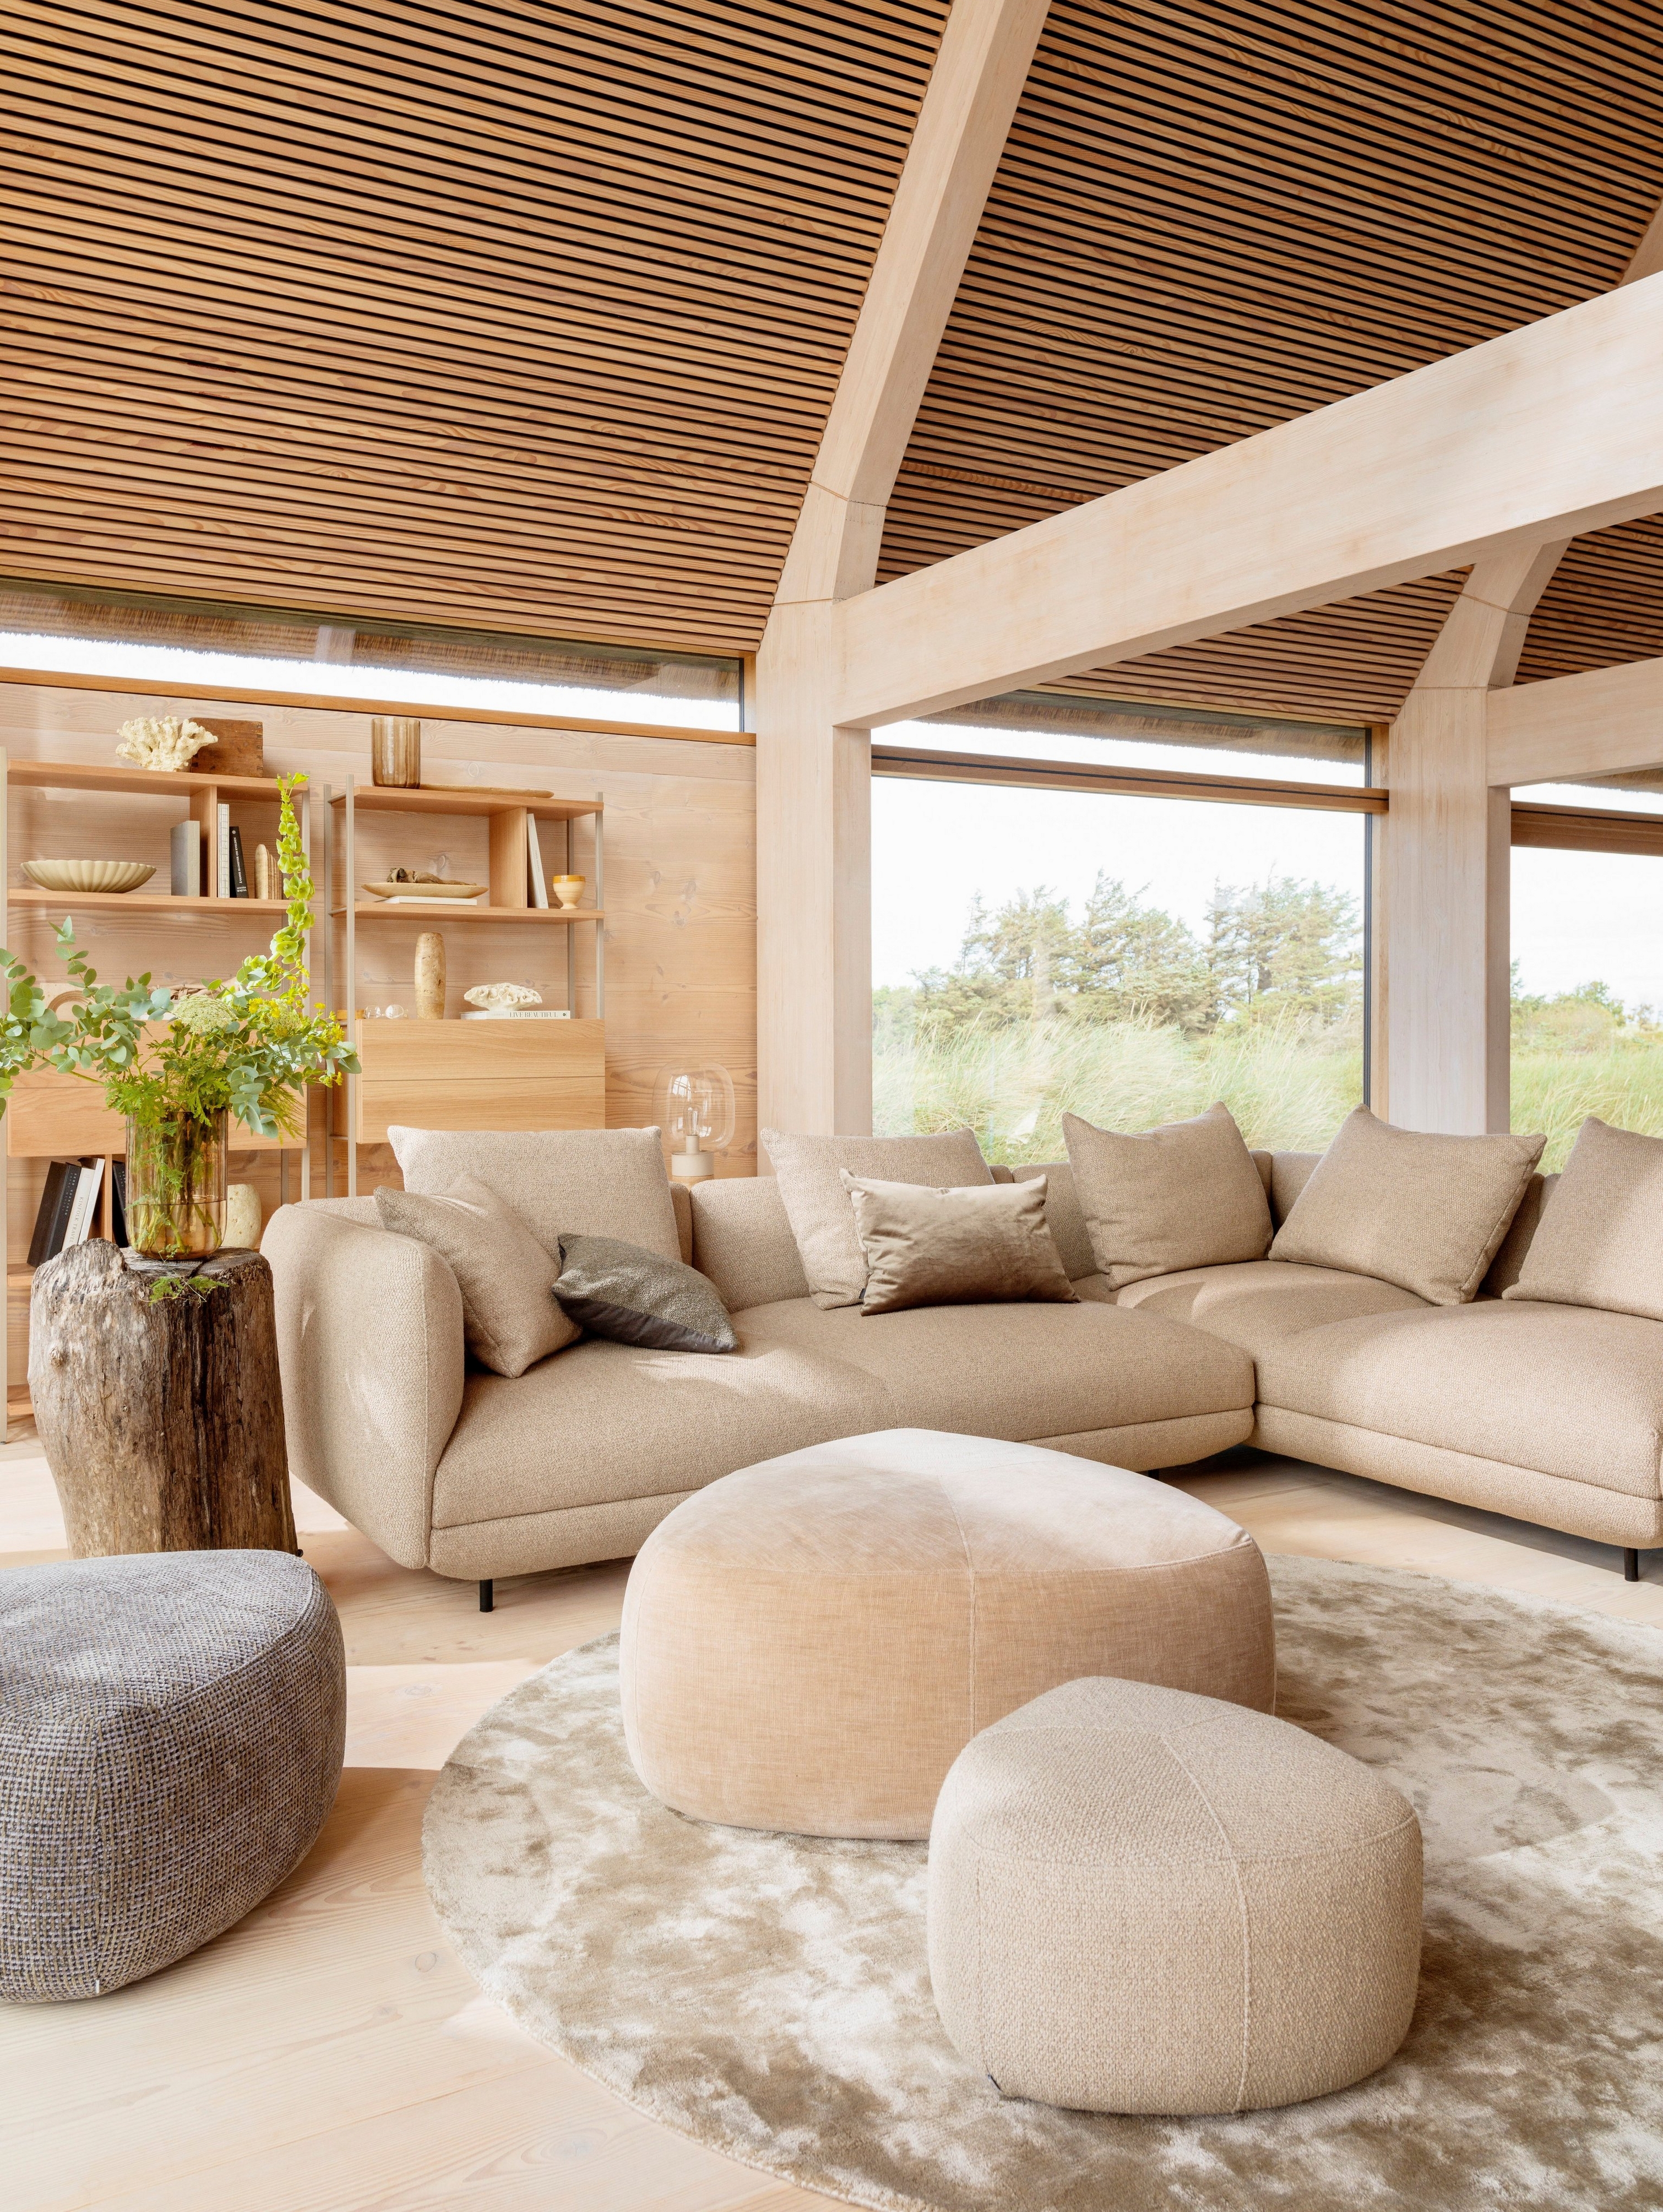 Warmer, gemütlicher Wohnraum mit dem Salamanca Sofa, bezogen mit braunem Lazio Stoff.